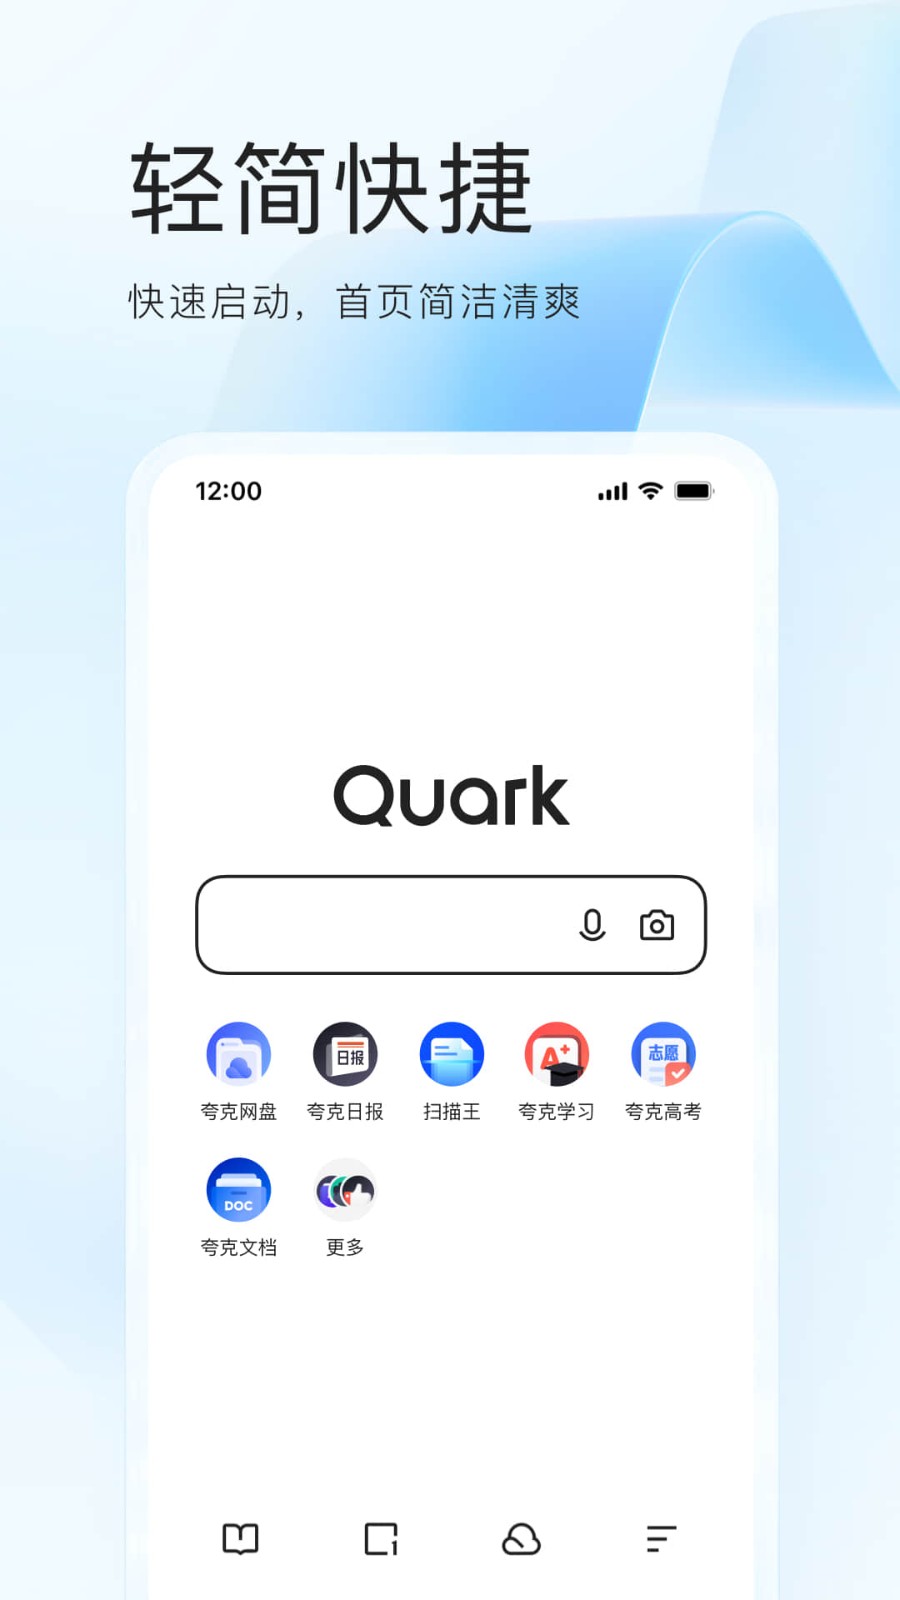 夸克浏览器缓存的视频在哪夸克浏览器缓存的视频位置介绍